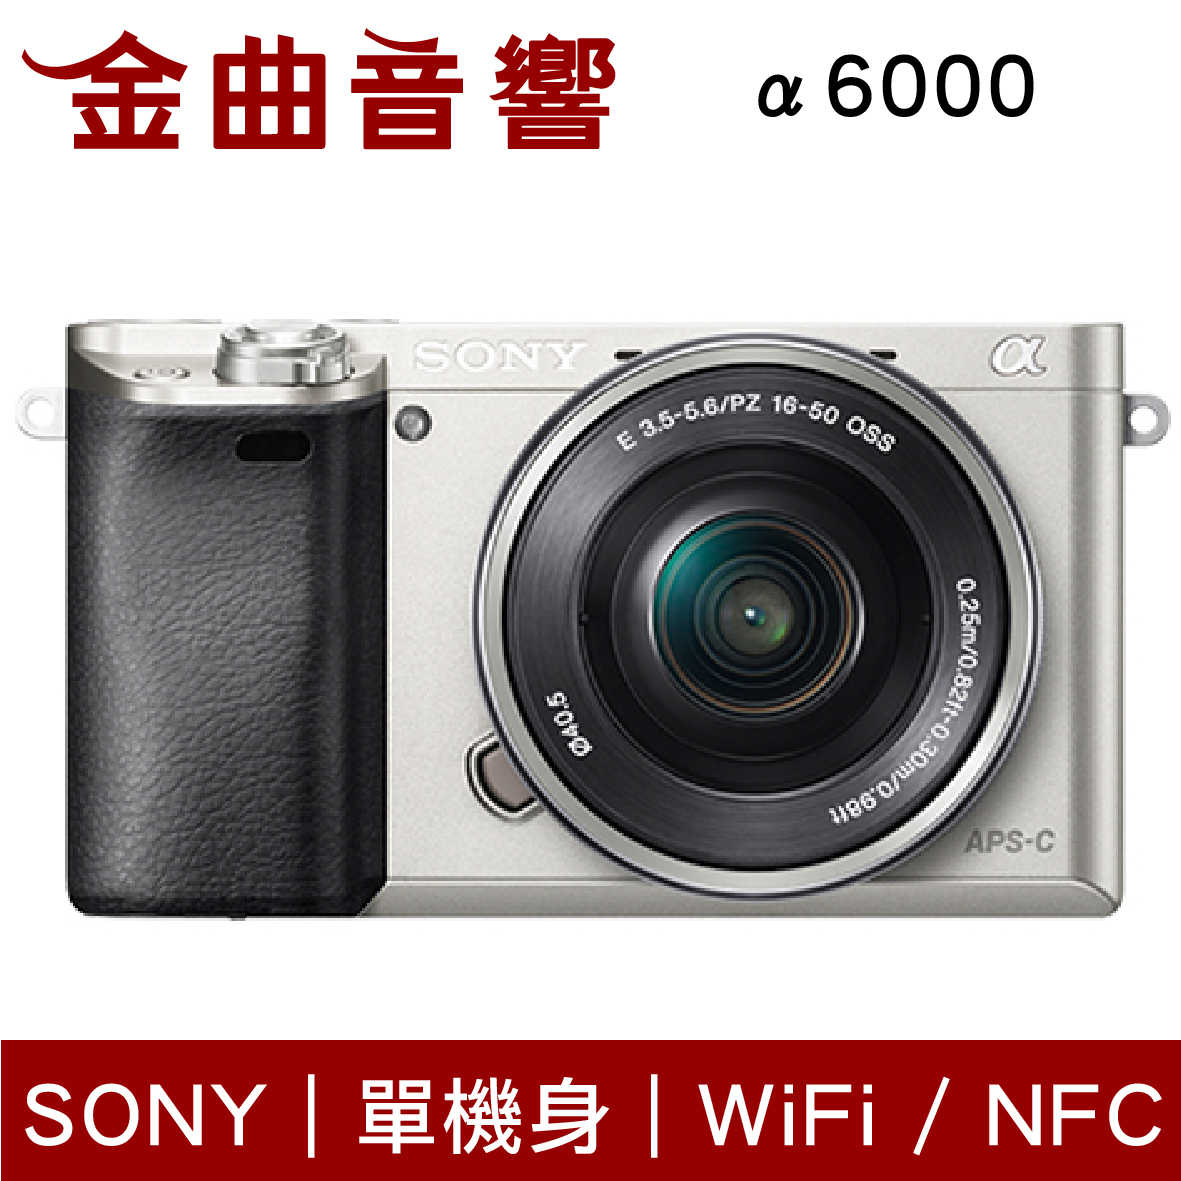 SONY 索尼 α6000 黑色 ILCE-6000 單機身 數位單眼相機 a6000 | 金曲音響